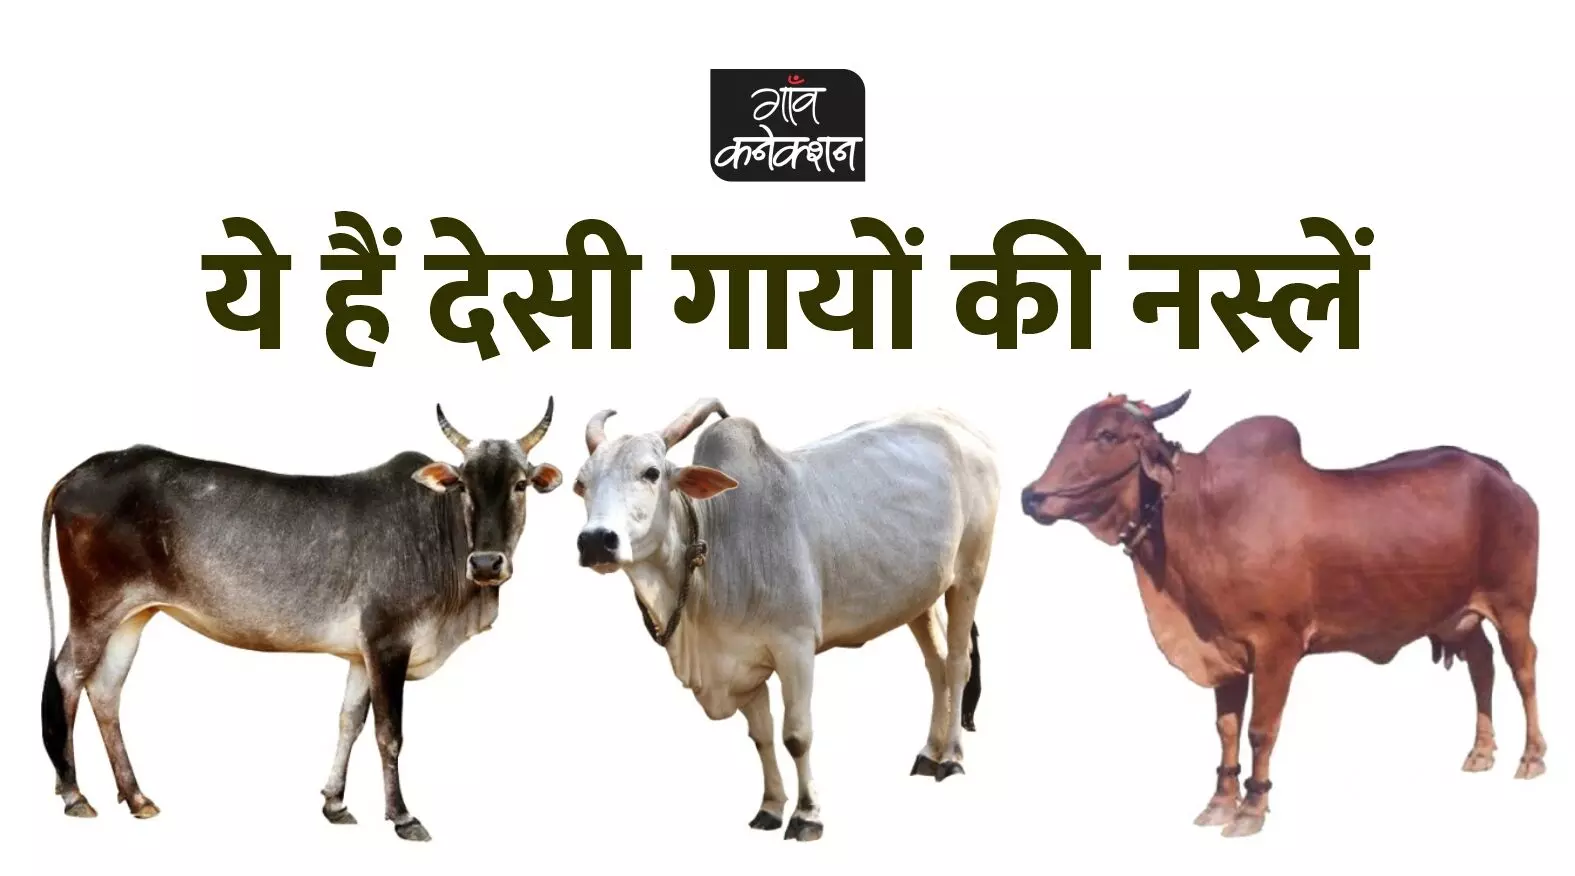 क्या आपको भारत की इन 43 नस्ल की गायों के बारे में पता है?